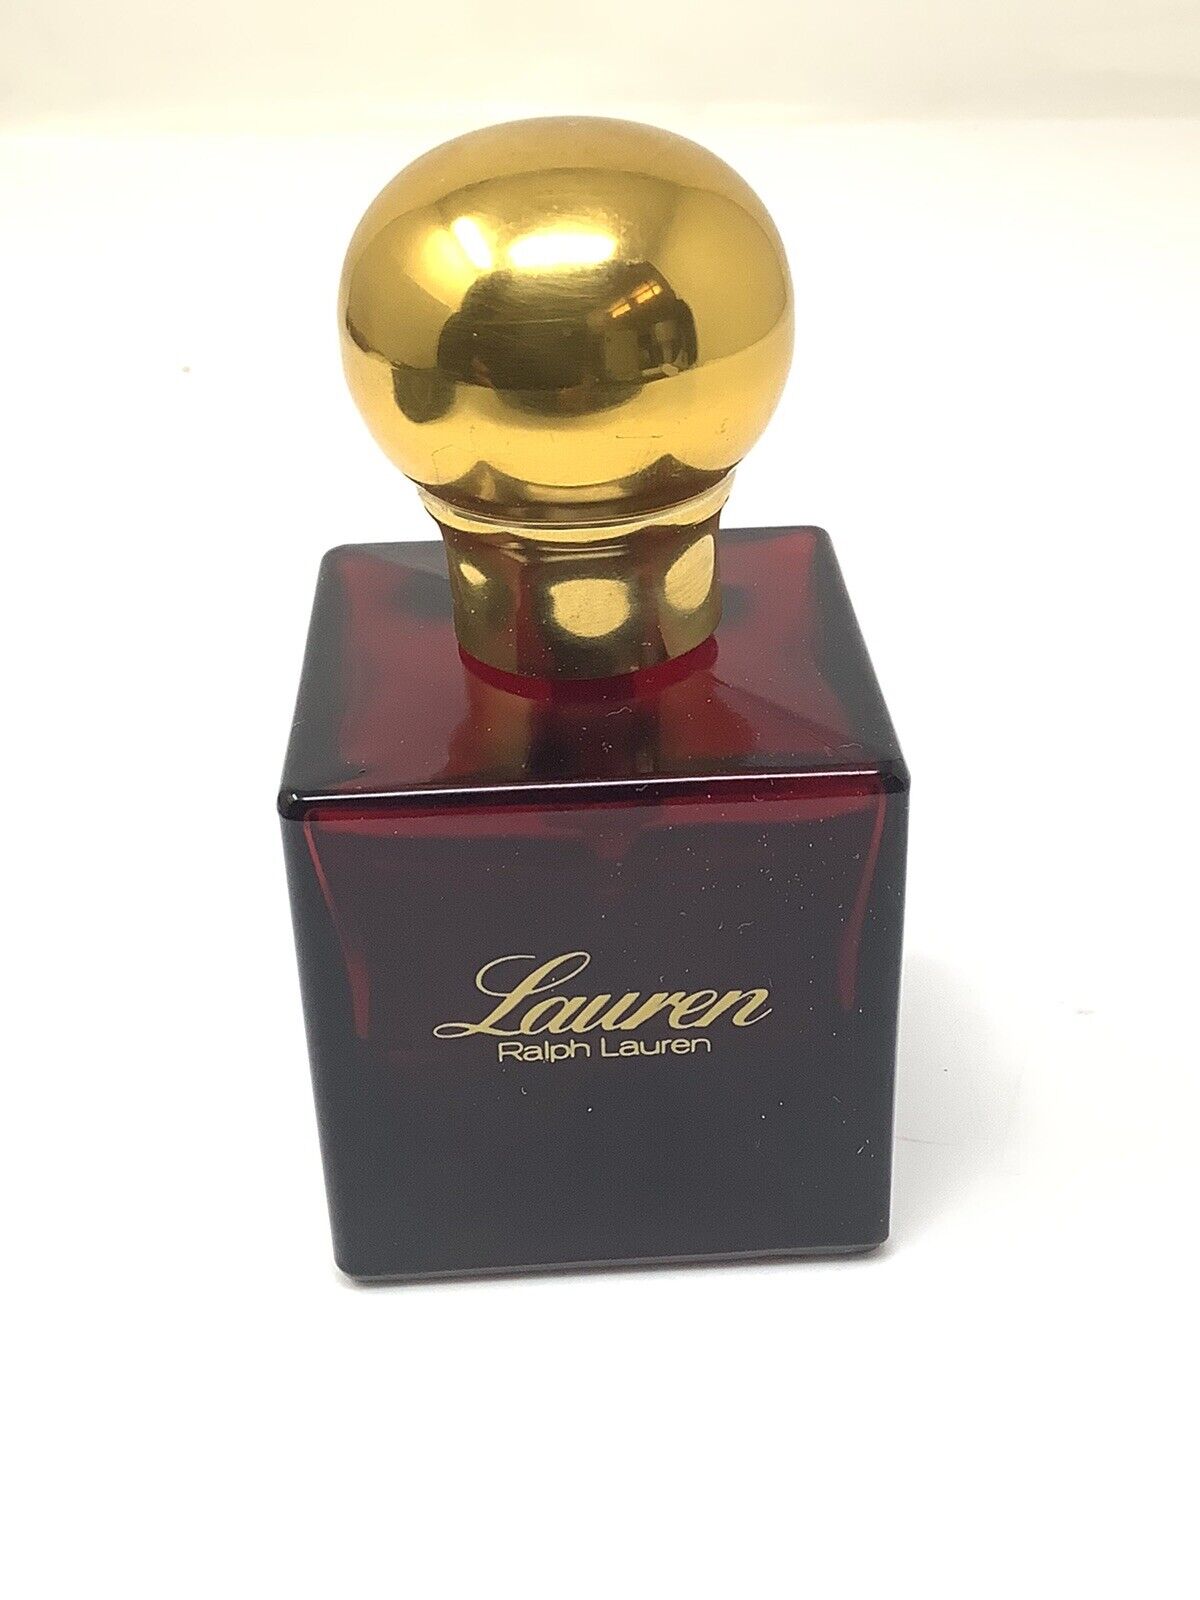 Vintage Lauren by Ralph Lauren Eau de Toilette Perfume - 1/2 Full - 2oz Bottle